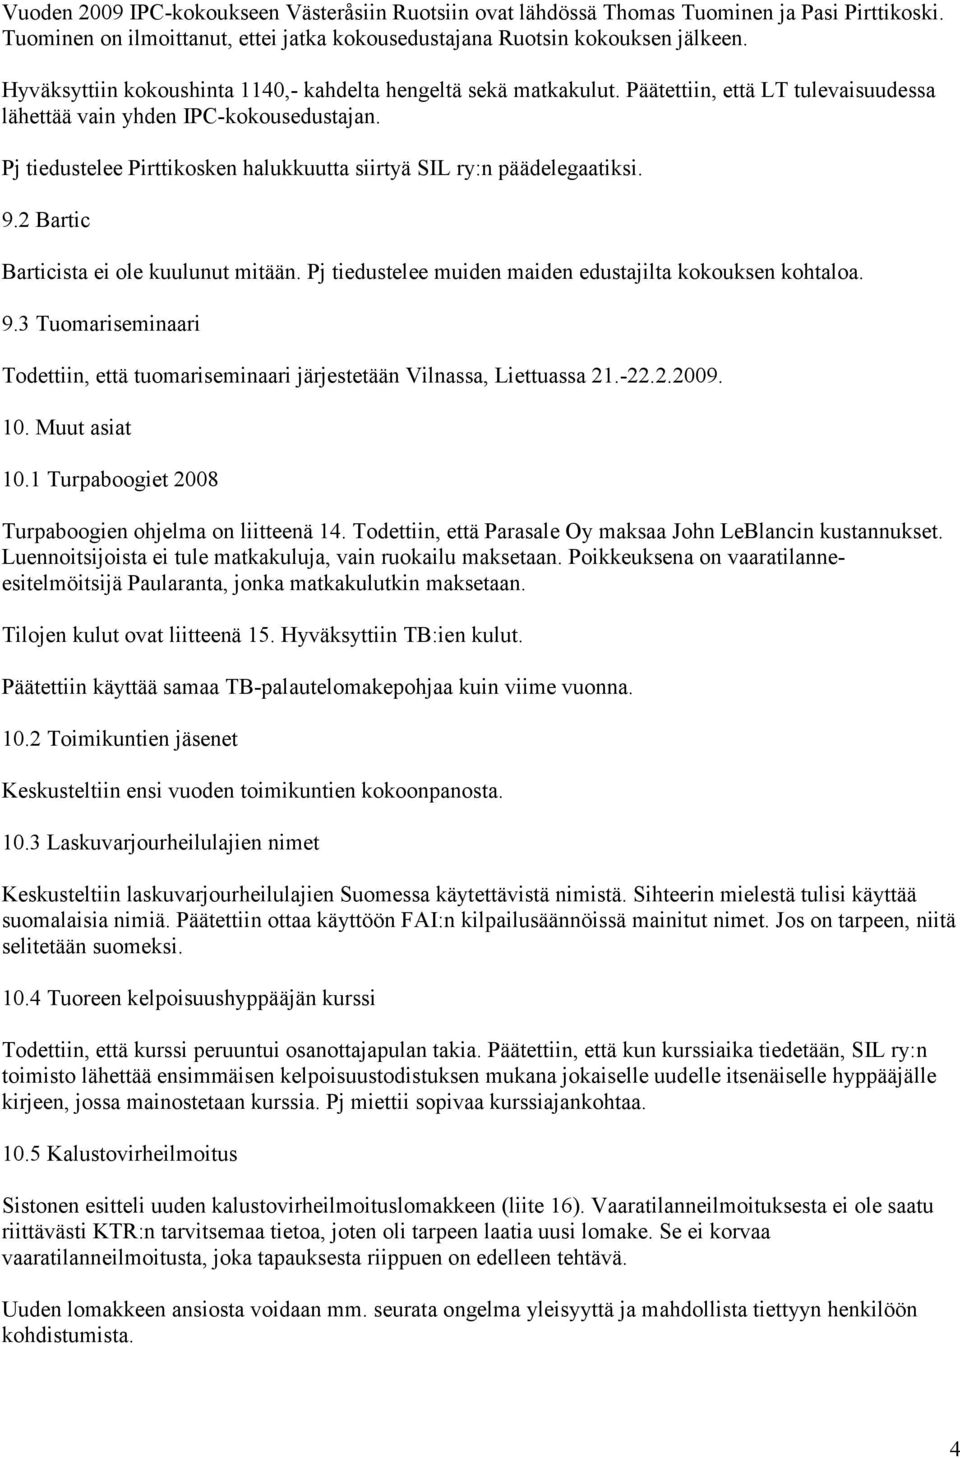 Pj tiedustelee Pirttikosken halukkuutta siirtyä SIL ry:n päädelegaatiksi. 9.2 Bartic Barticista ei ole kuulunut mitään. Pj tiedustelee muiden maiden edustajilta kokouksen kohtaloa. 9.3 Tuomariseminaari Todettiin, että tuomariseminaari järjestetään Vilnassa, Liettuassa 21.